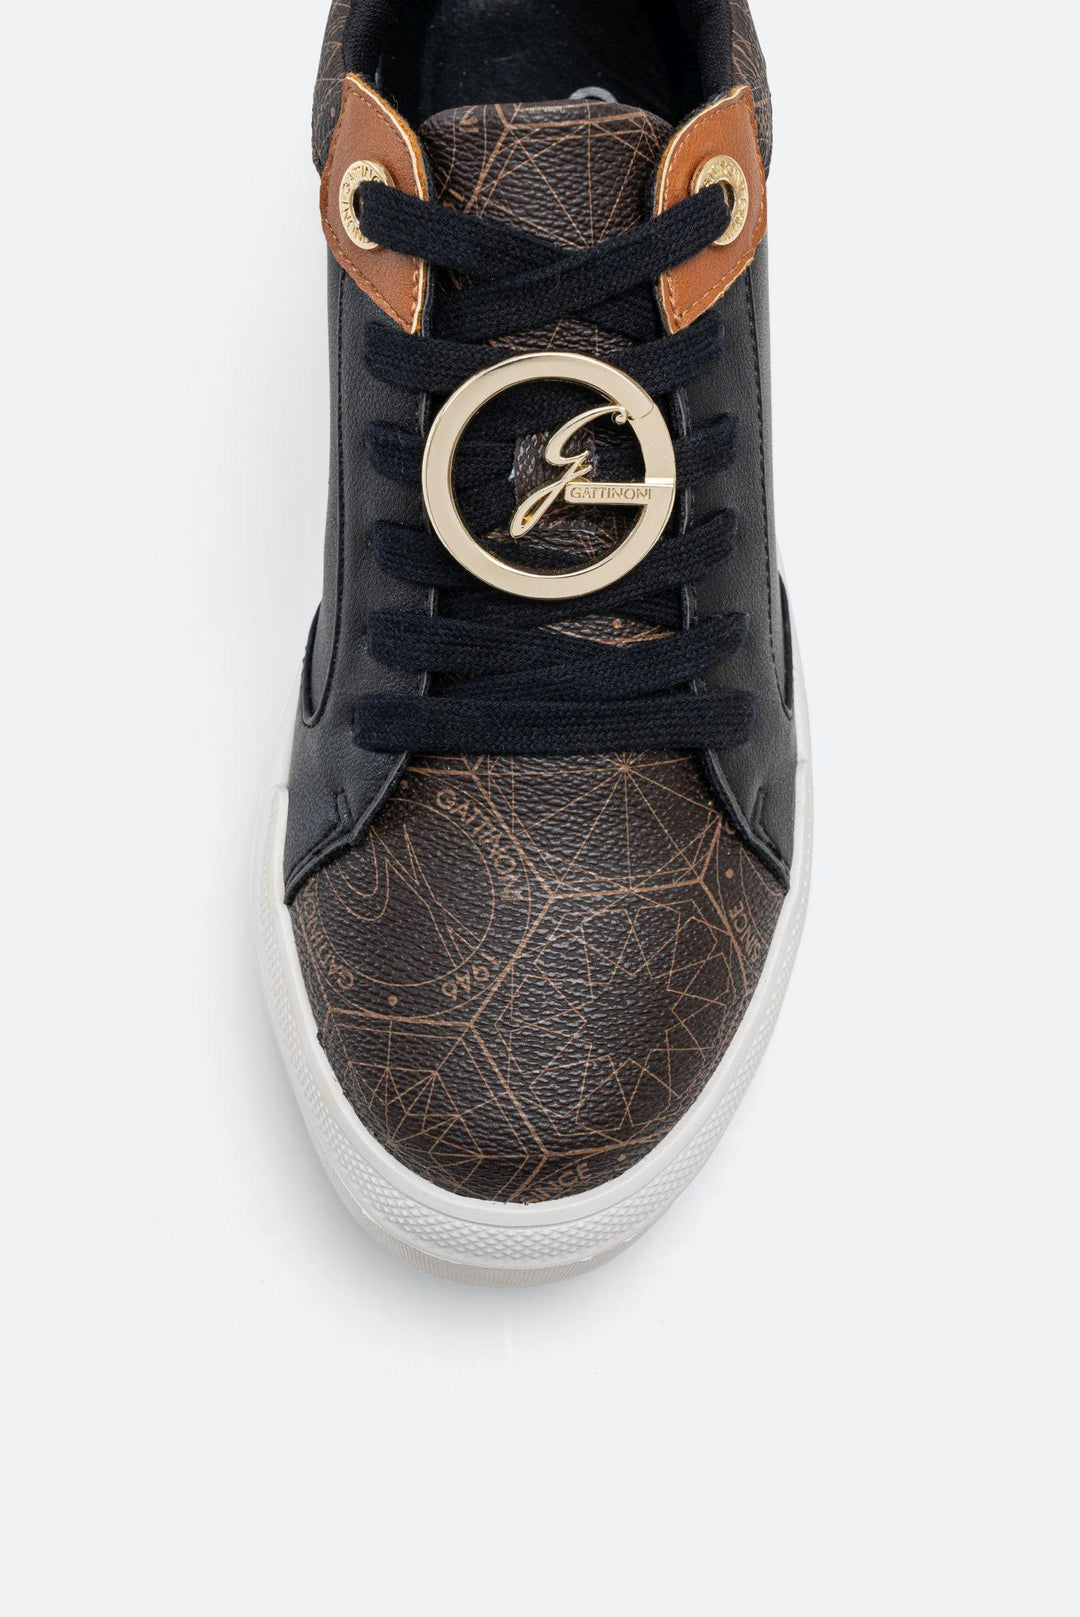 Sneaker Leon in similpelle stampa Teodosia colore nero e marrone